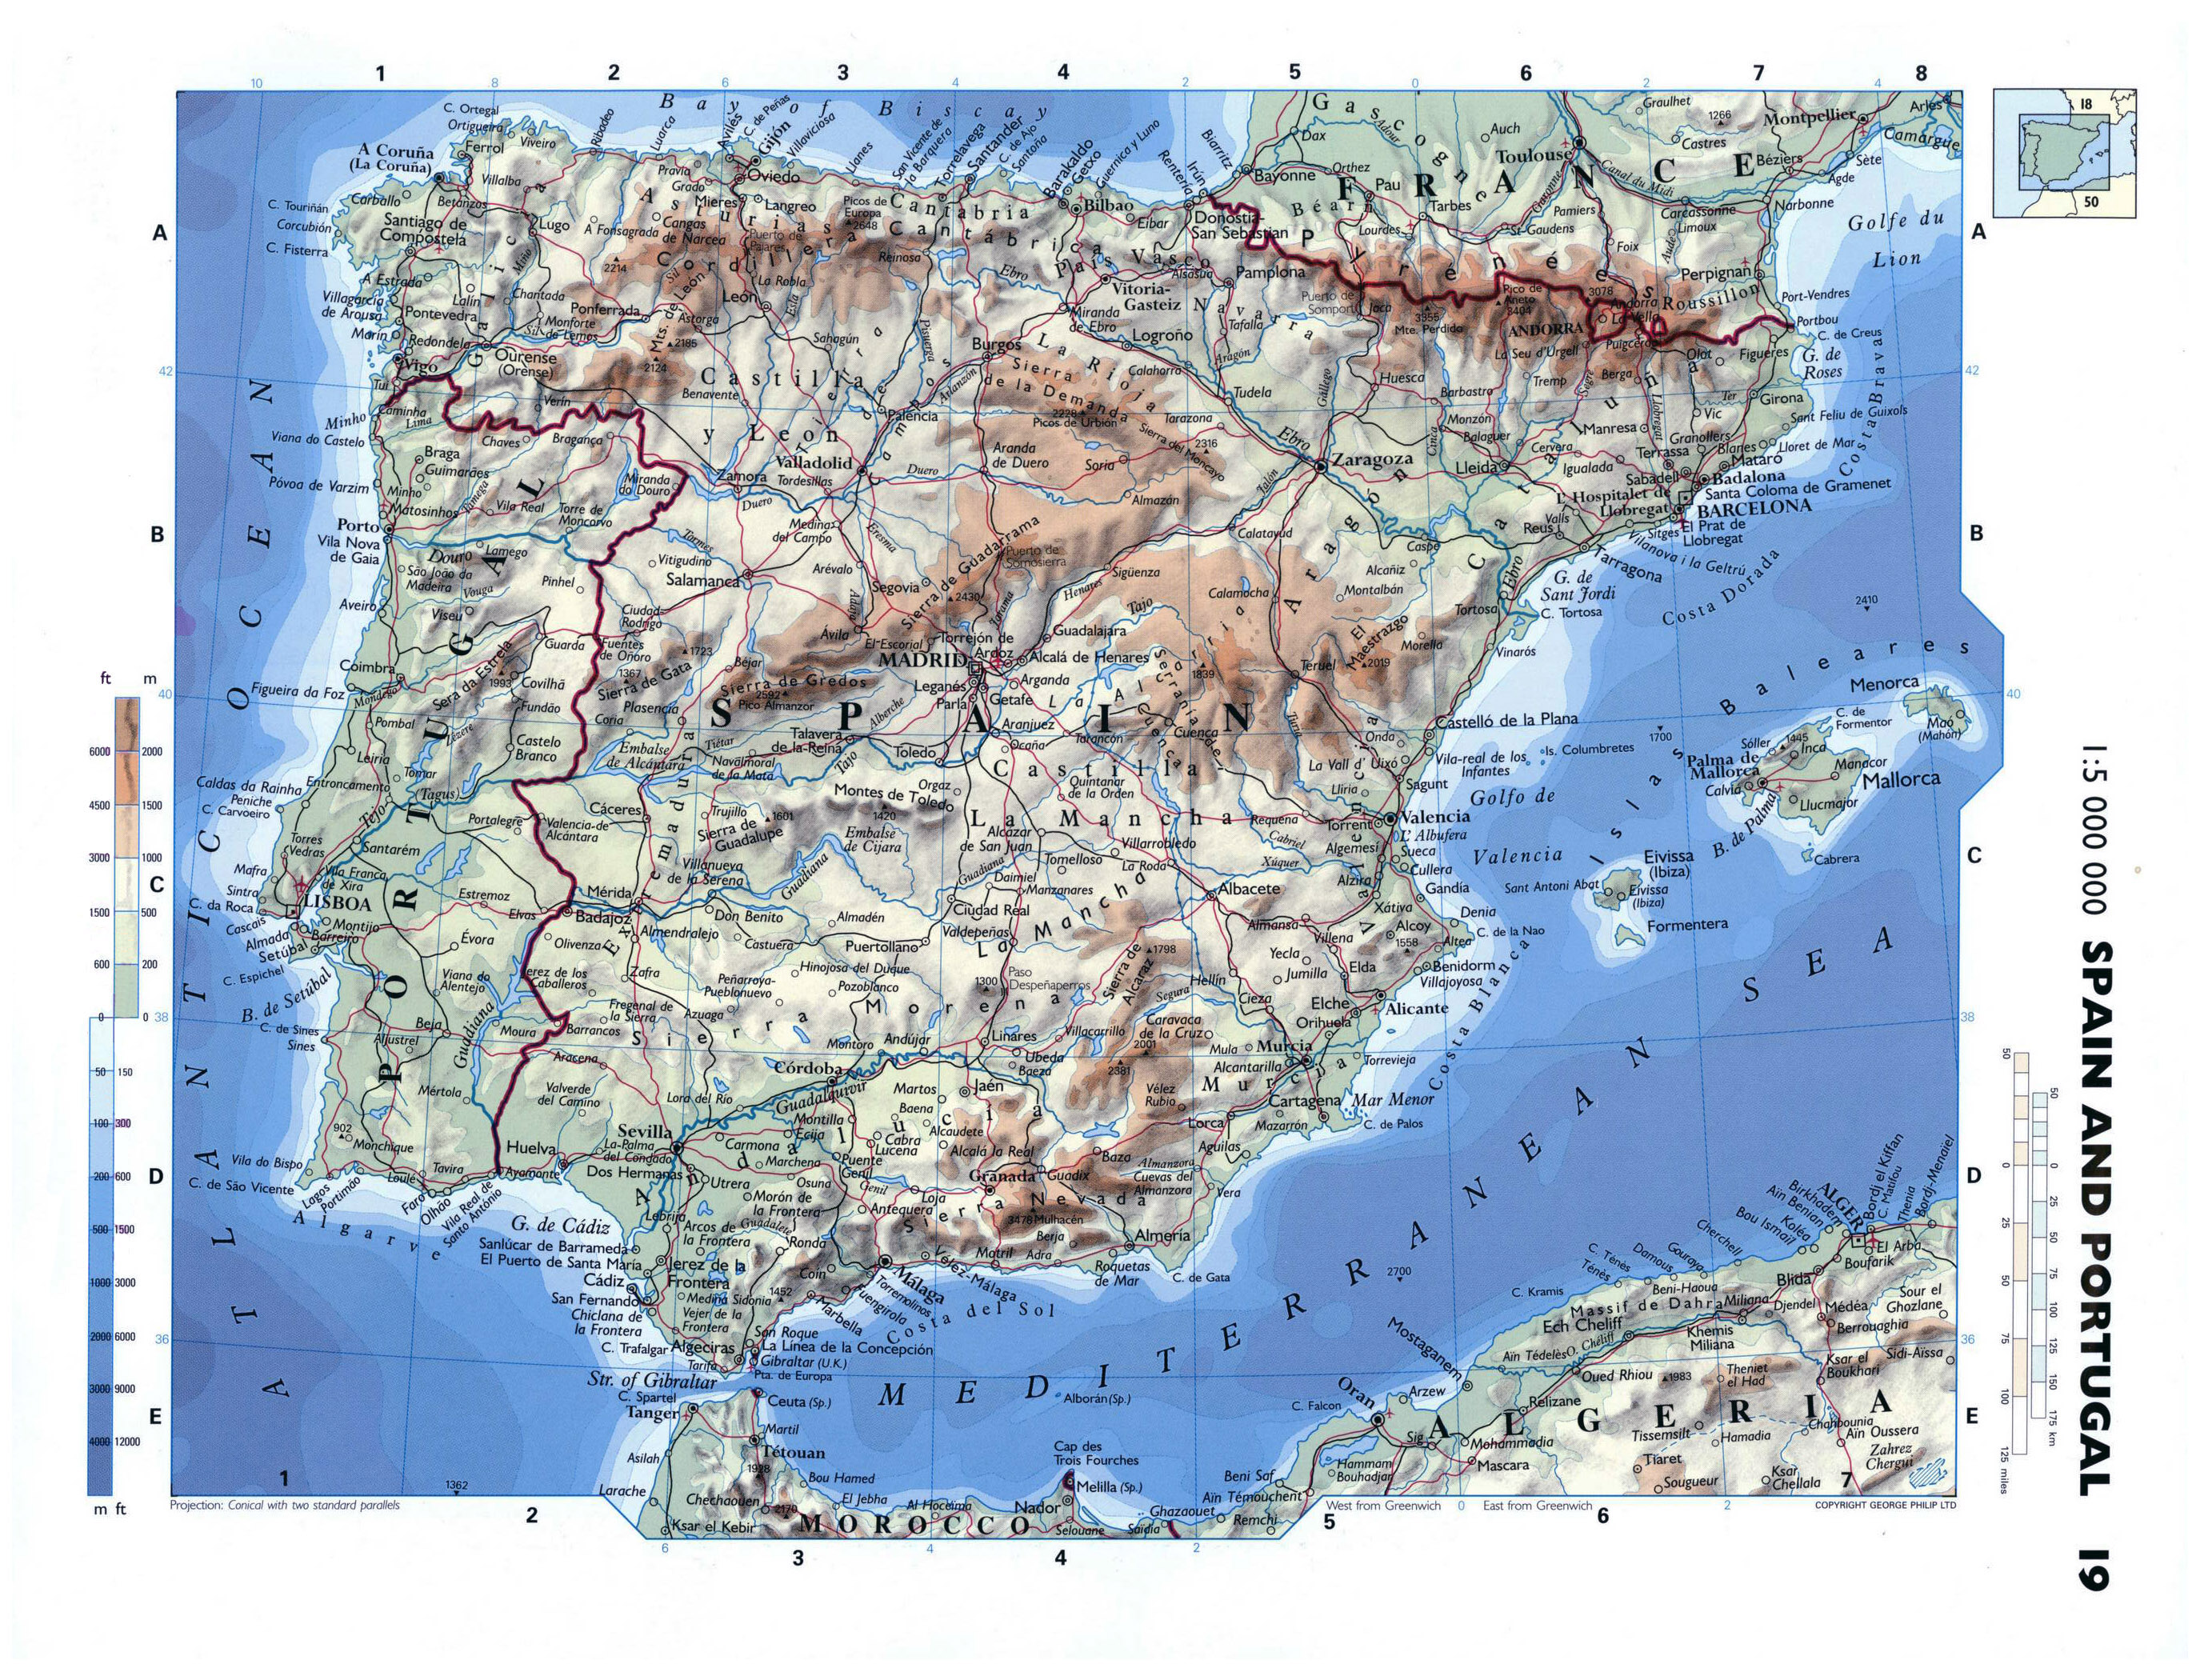 Mapa general de carreteras de españa y portugal